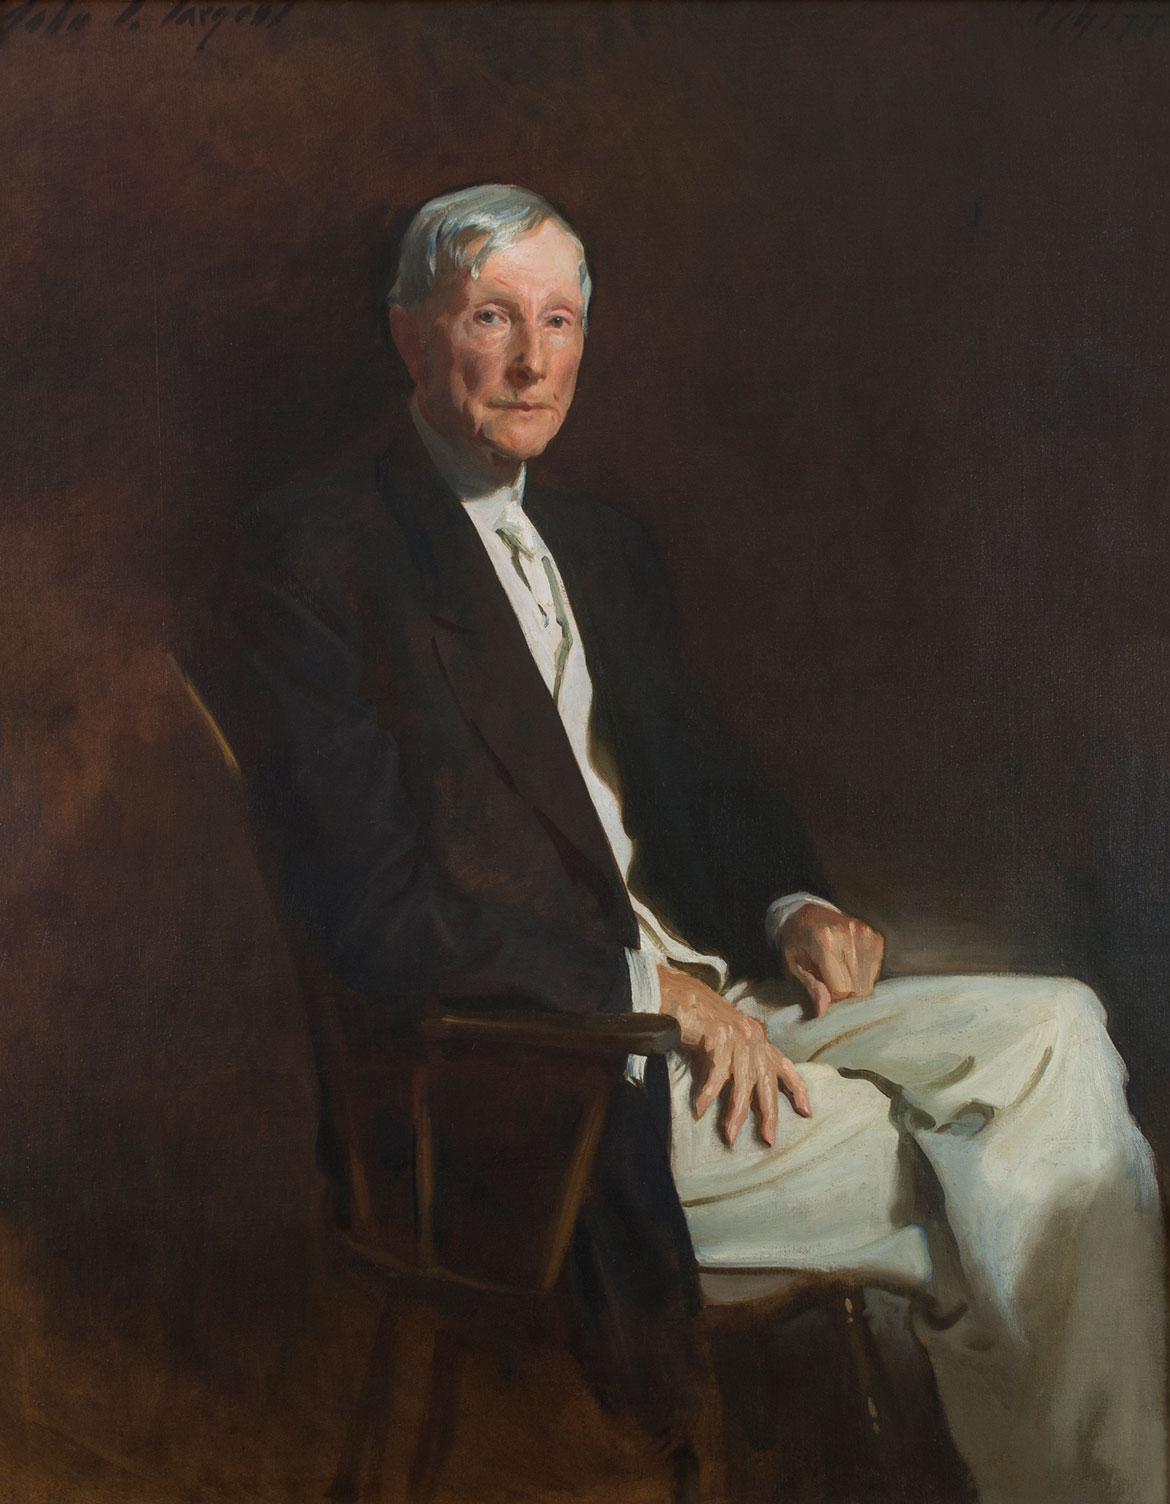 John Singer Sargent, "John D. Rockefeller," 1889-1917, oil on canvas.